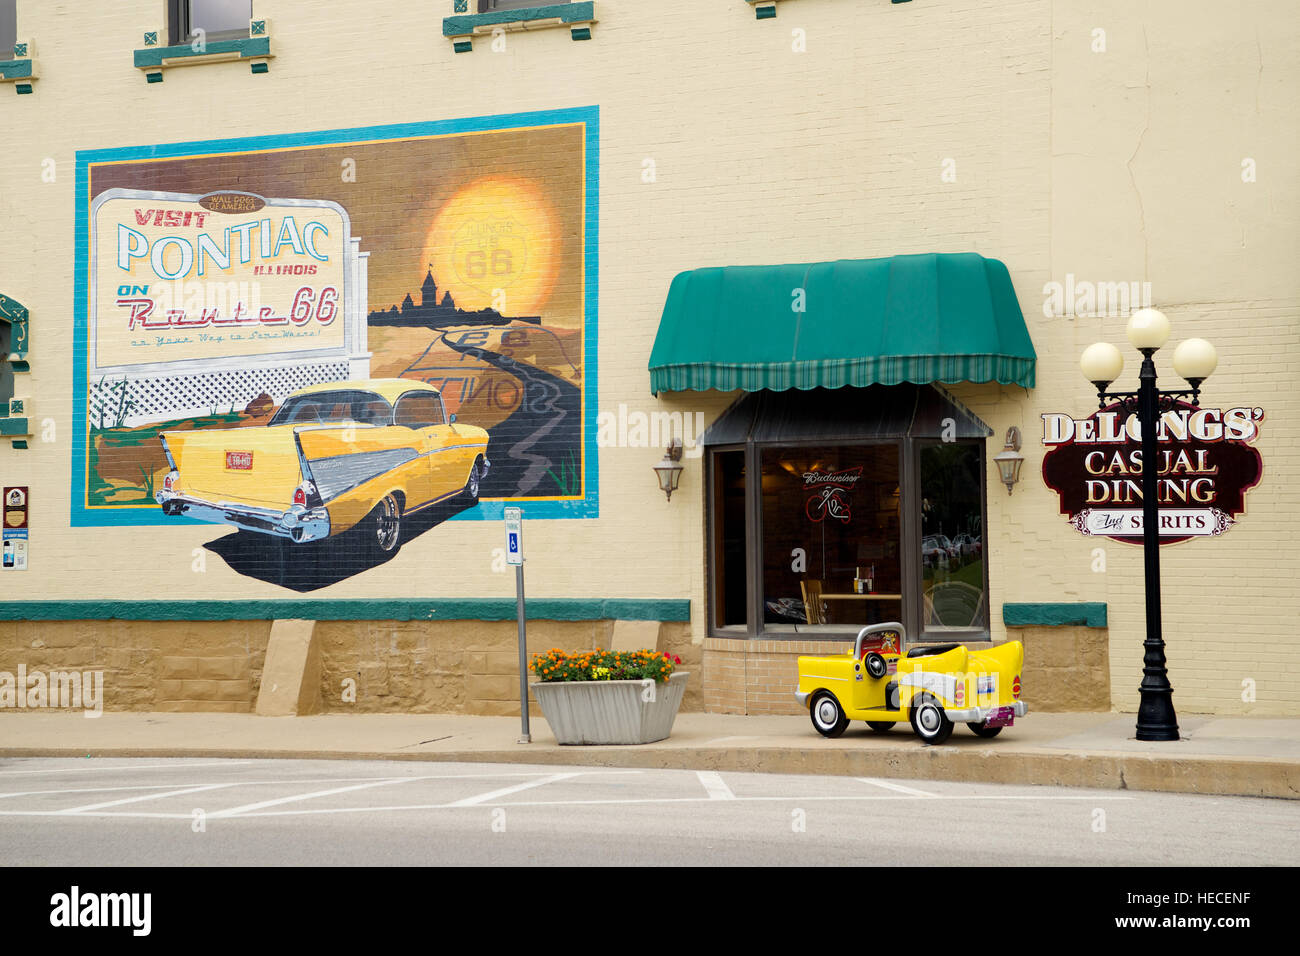 Souvenirs de la route 66, peinture murale et Miniature de voiture, le centre-ville de Pontiac, Livingston County, Illinois, États-Unis. Banque D'Images